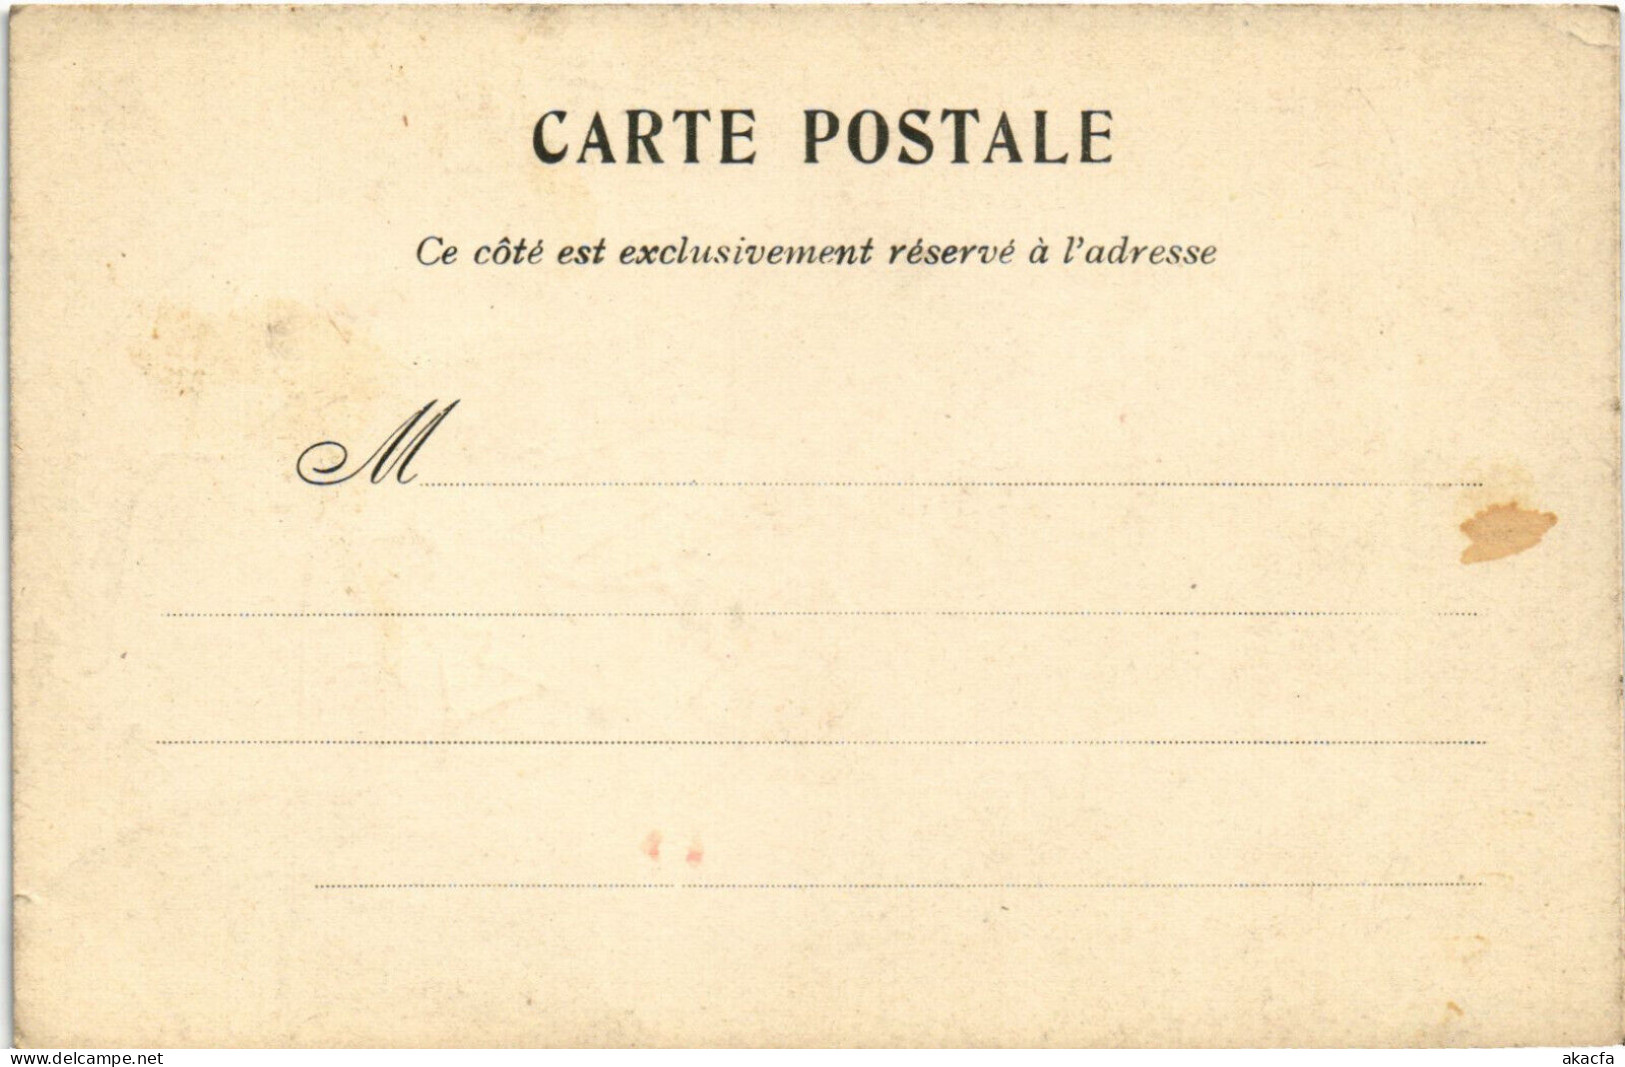 PC ARTIST SIGNED, FERNEL, DEUF A LA COQUE, WARSHIP, Vintage Postcard (b51781) - Fernel